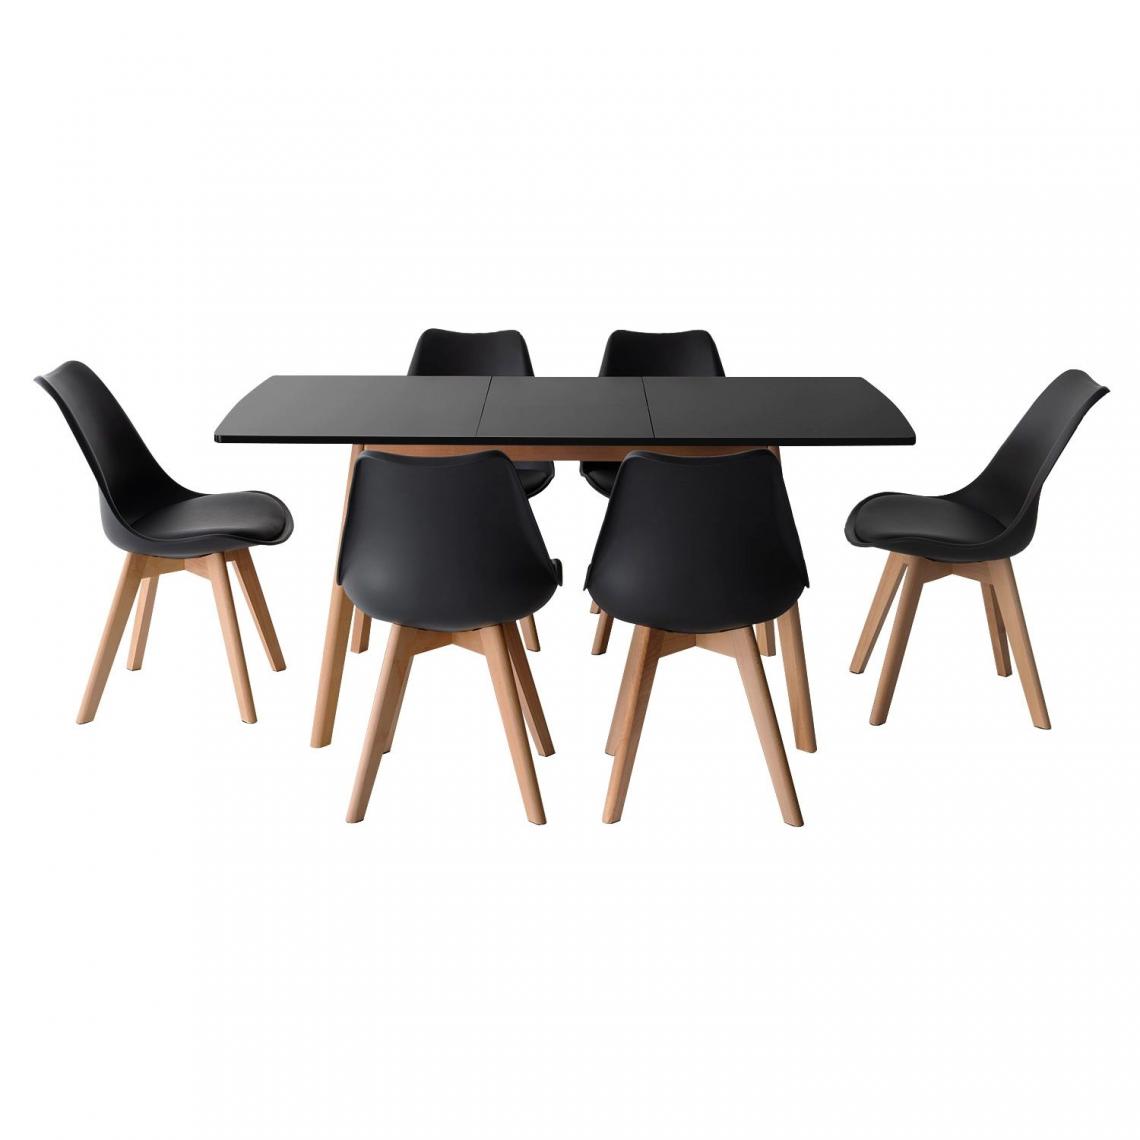 Beneffito - SENJA - Ensemble Table Extensible 120/160 cm et Chaises Scandinaves - NOIR - X6 Chaises - Tables à manger